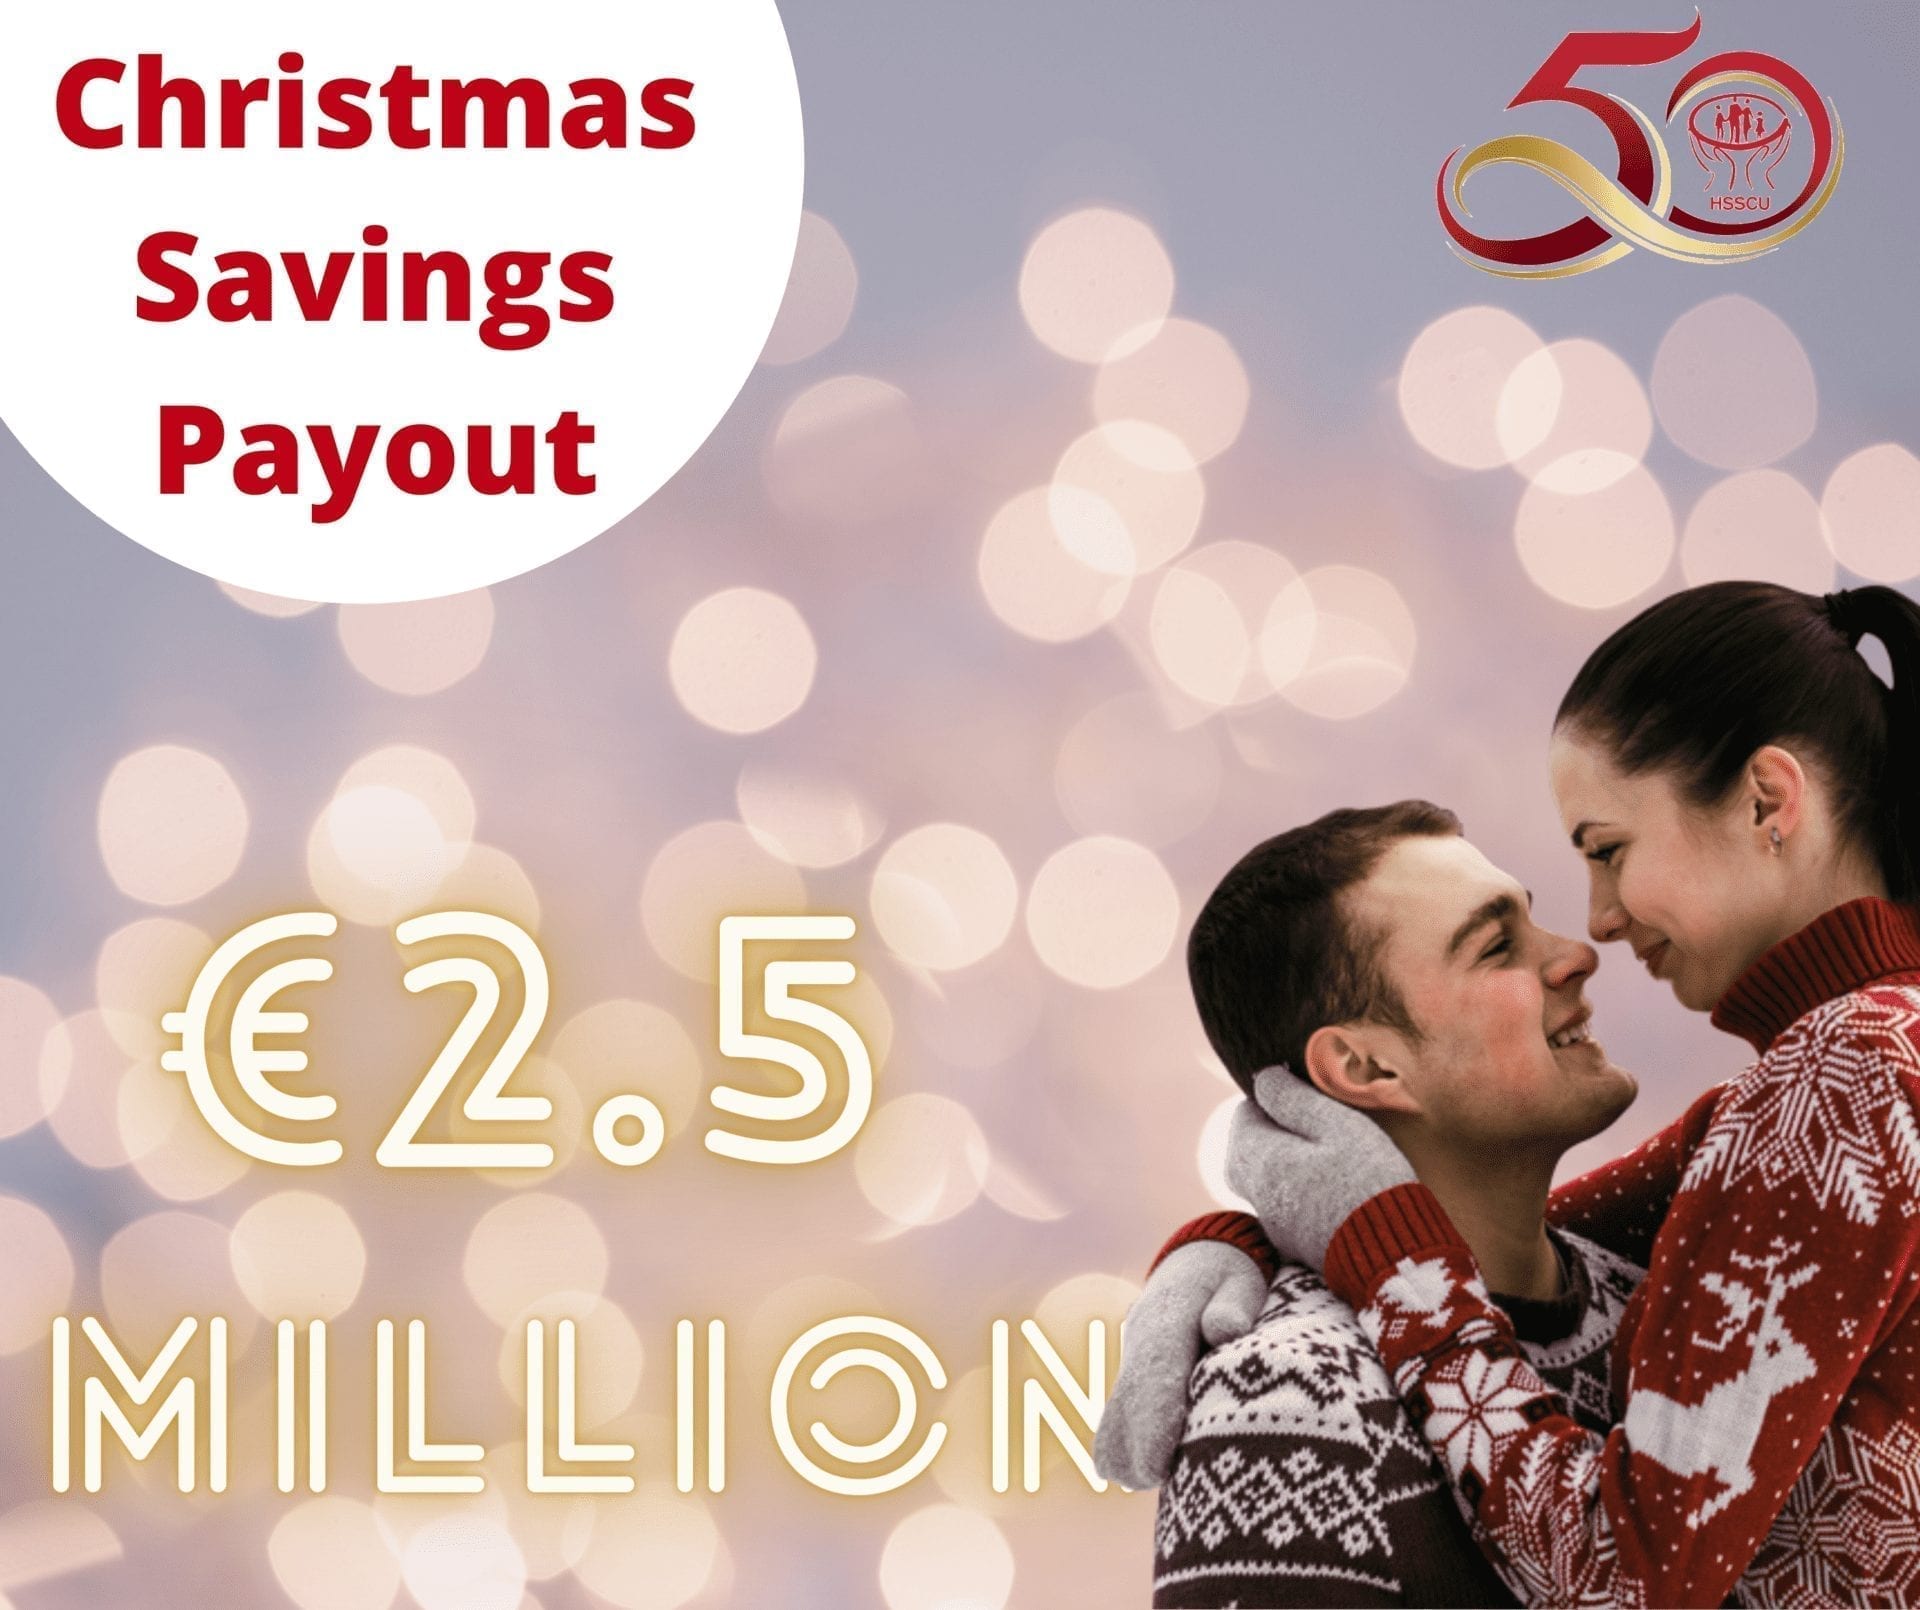 Christmas Savings Payout - HSSCU